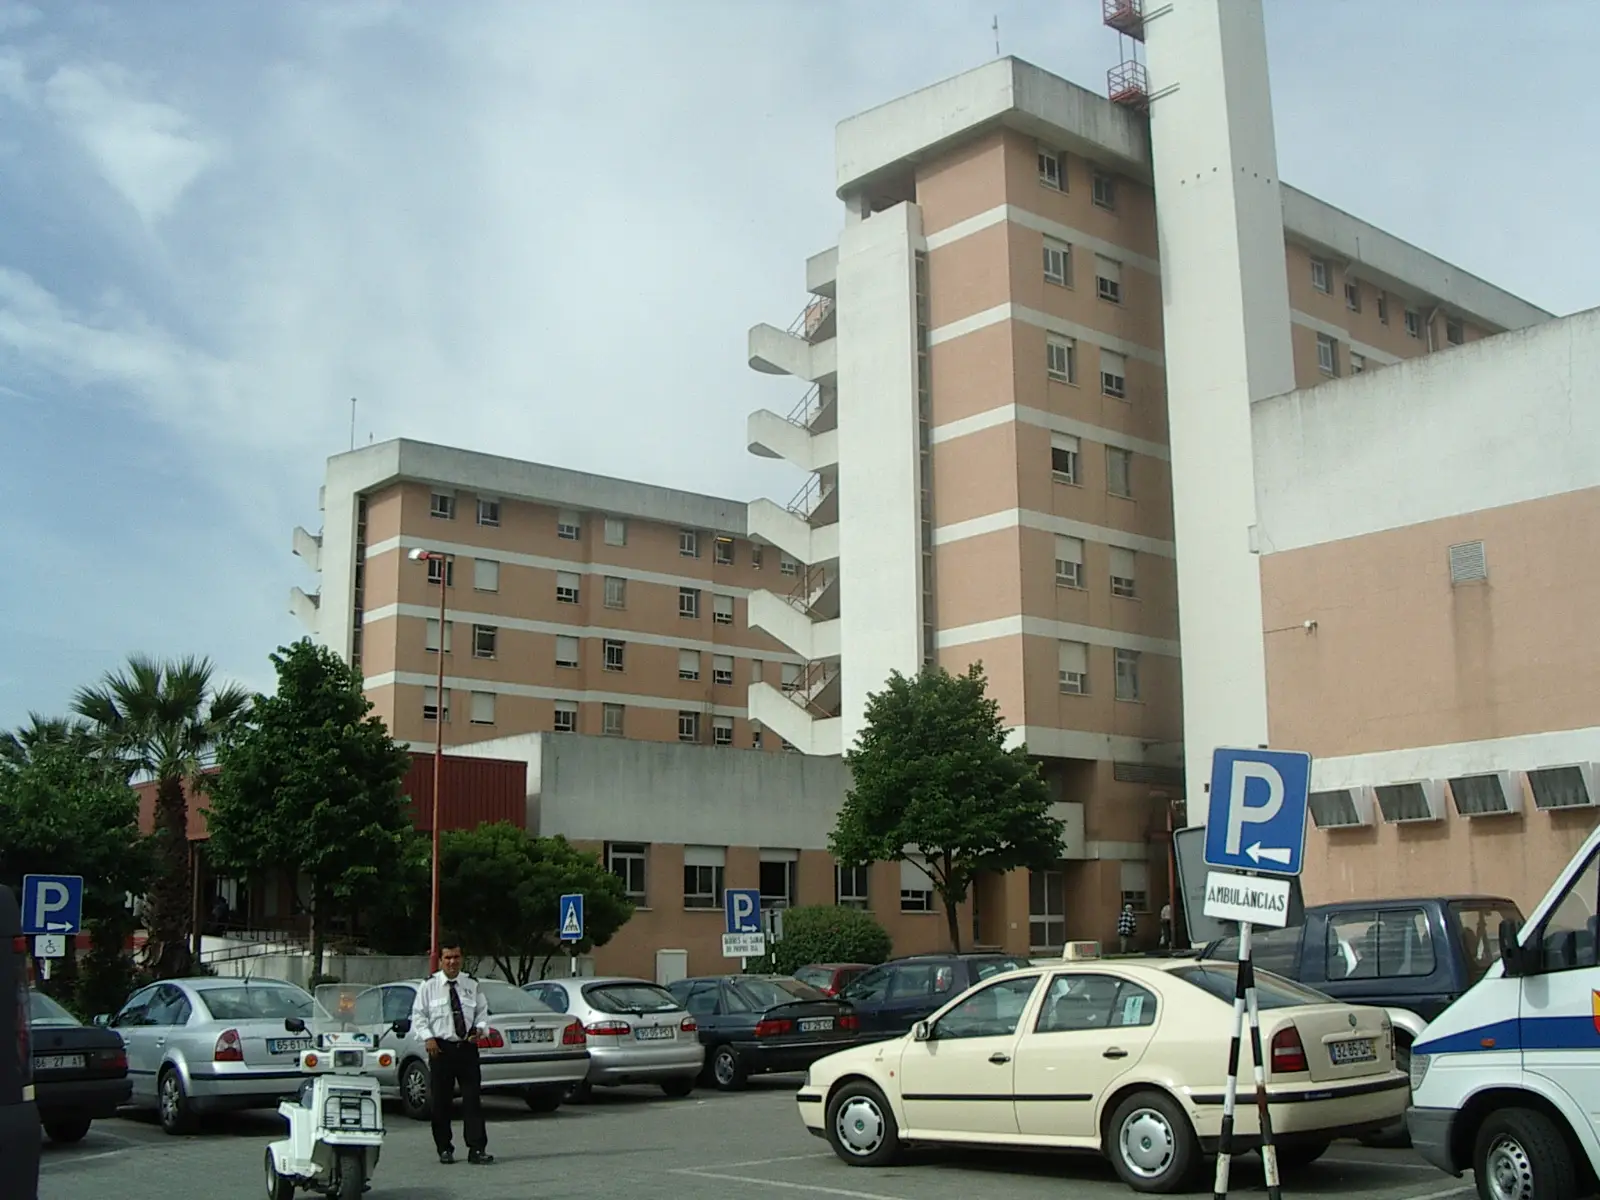 Utentes do Seixal pedem esclarecimentos sobre demissões no hospital de Almada